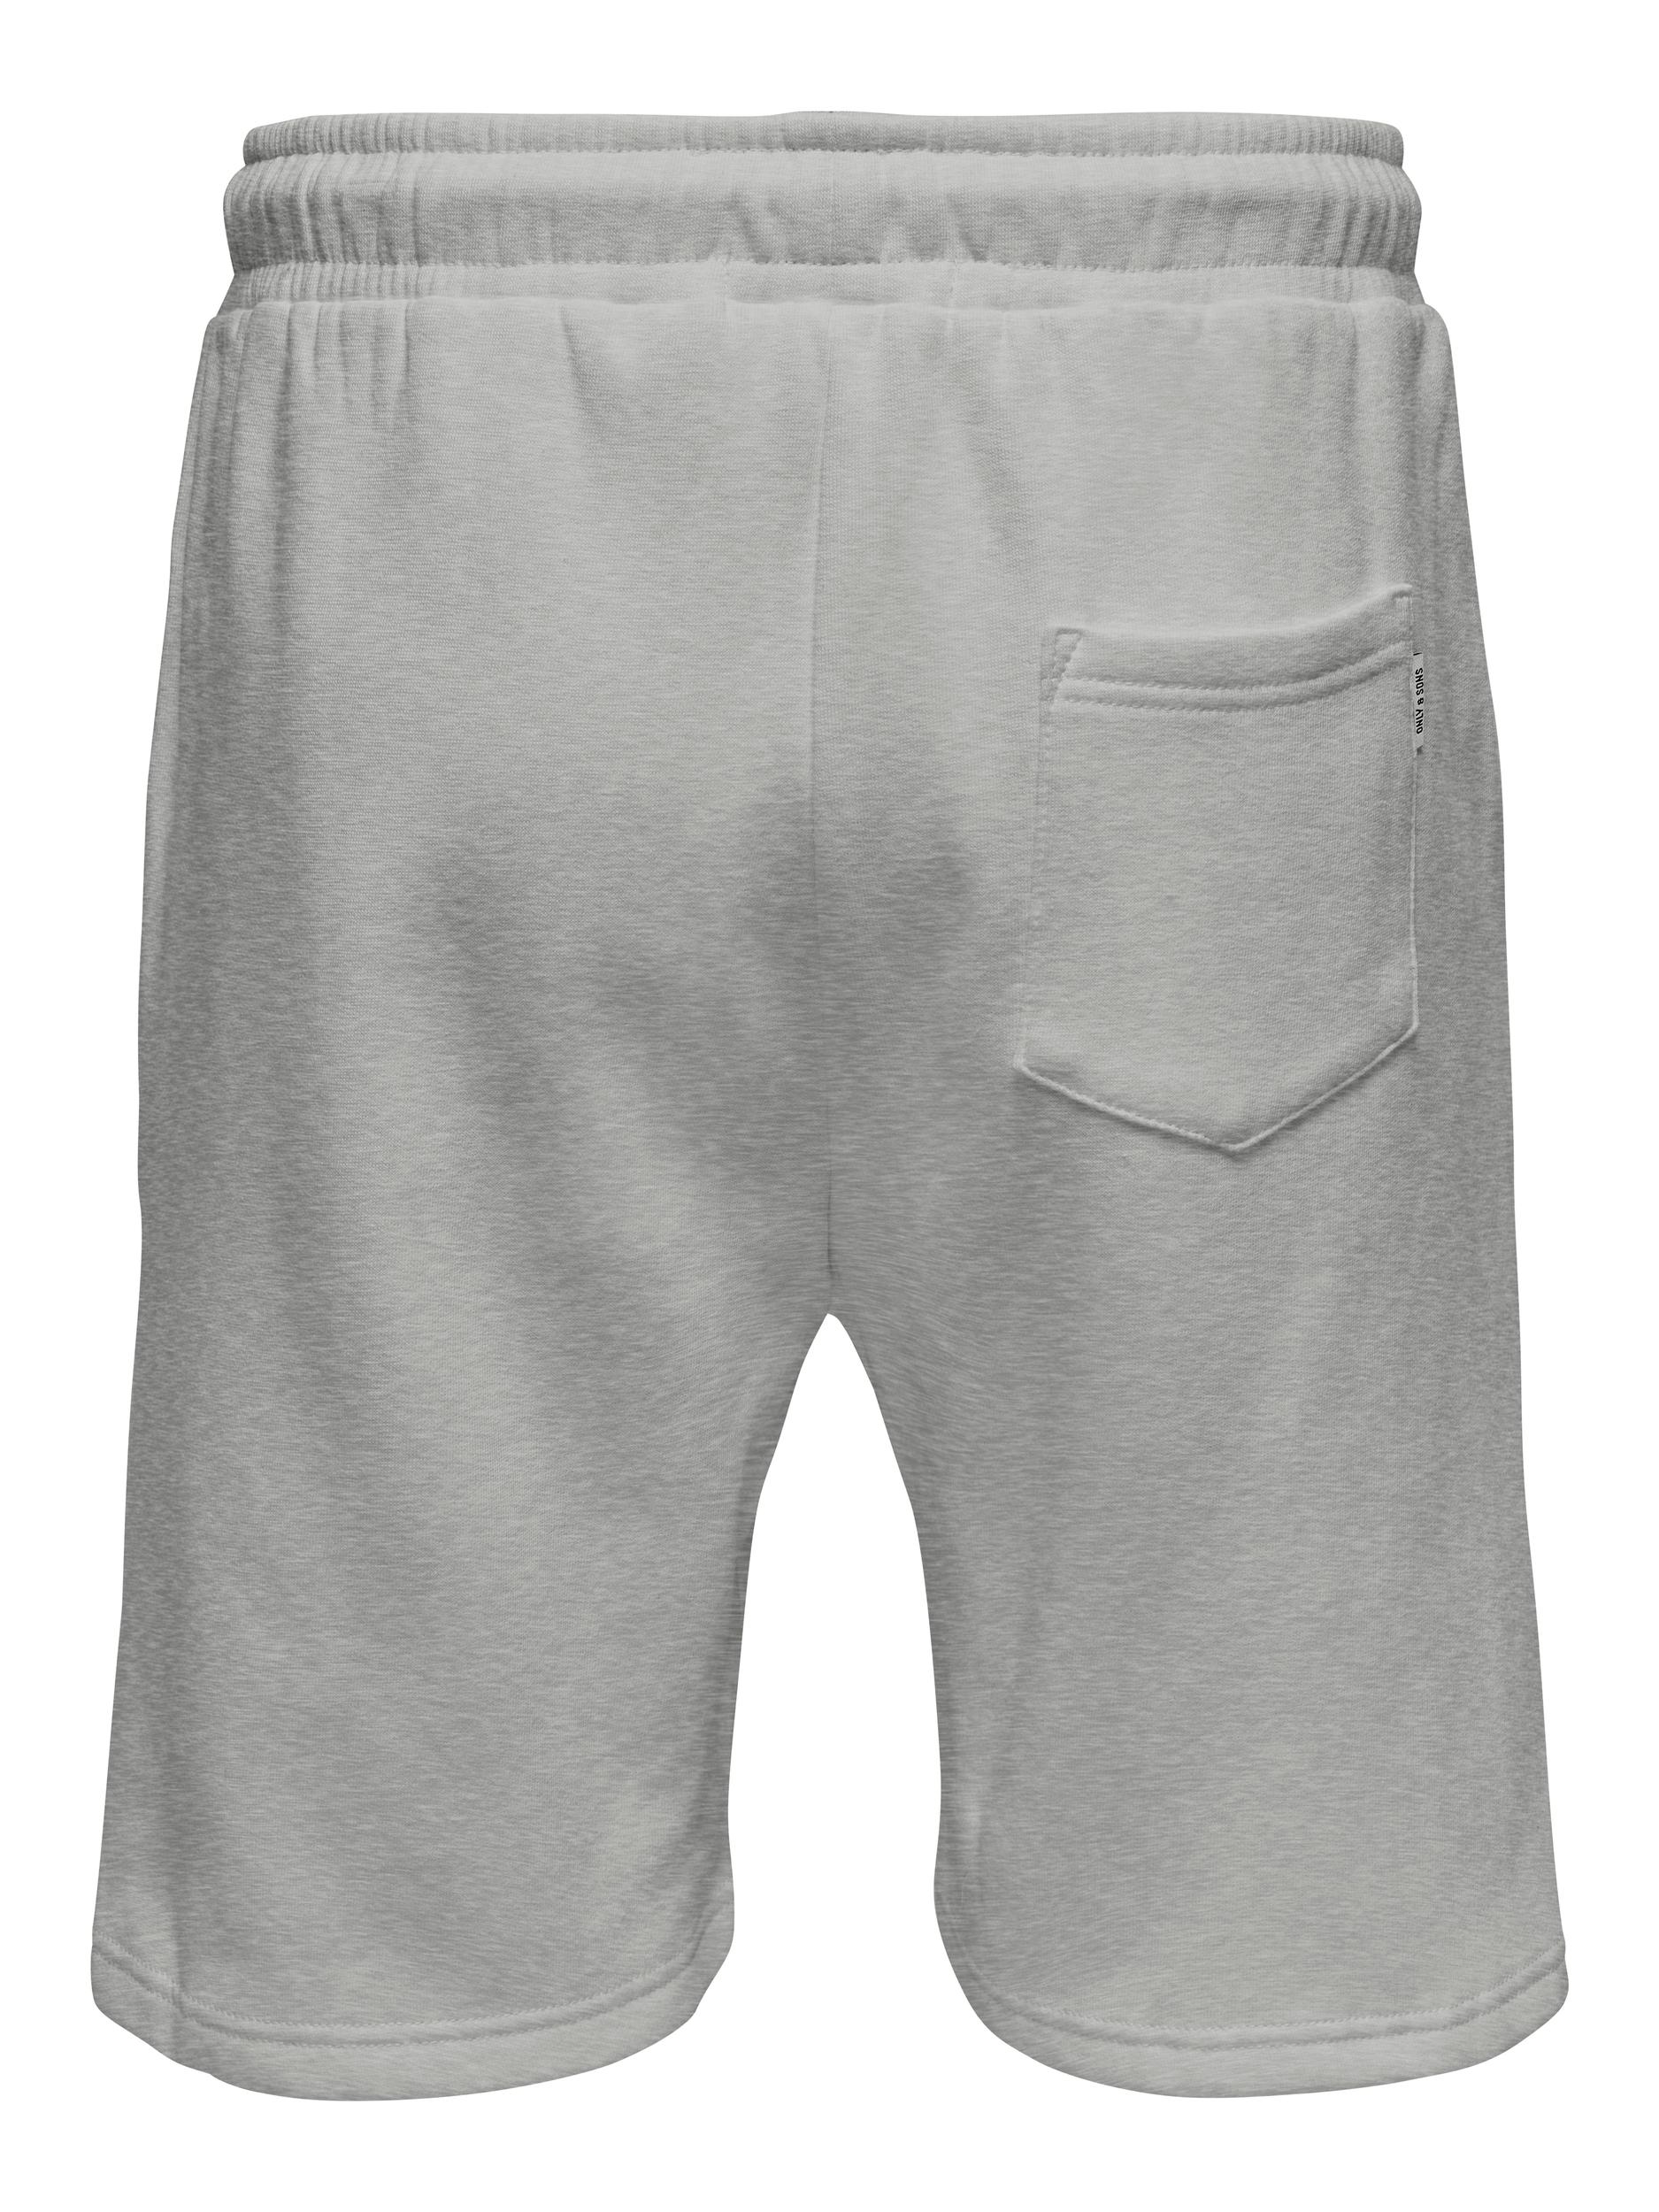 ONLY Shorts, Light Grey Melange, M